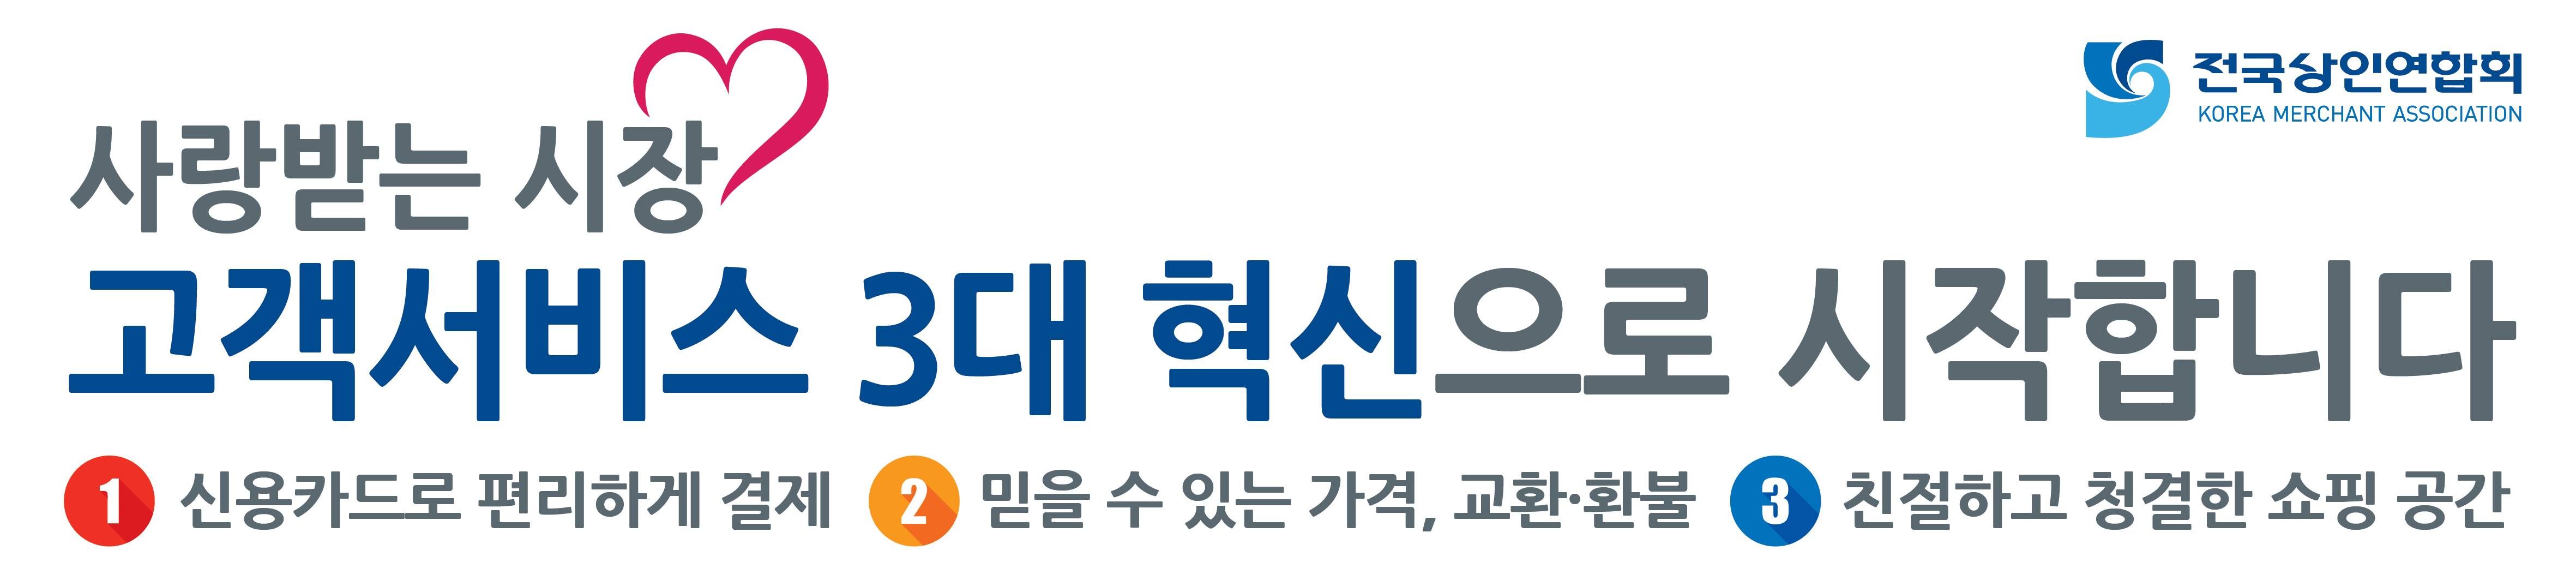 고객서비스 3대혁신 홍보물(현수막, 전단지) 시안 게시